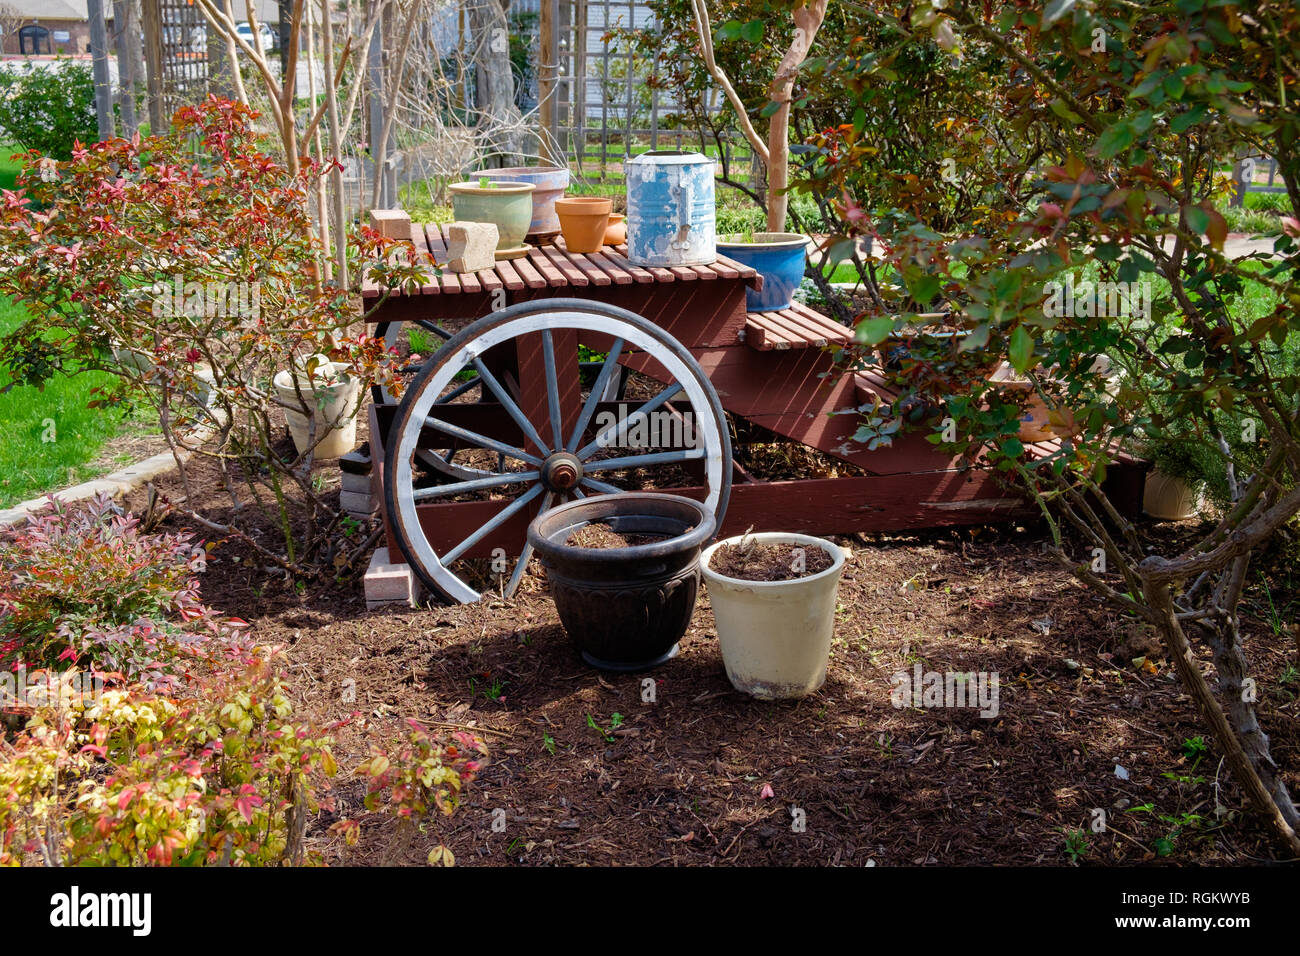 Rústicas de madera roja mesa de picnic fuera en el jardín con un viejo Wagon Wheel junto a ella y varias macetas en la mesa y bancos. Árboles y arbustos. Foto de stock